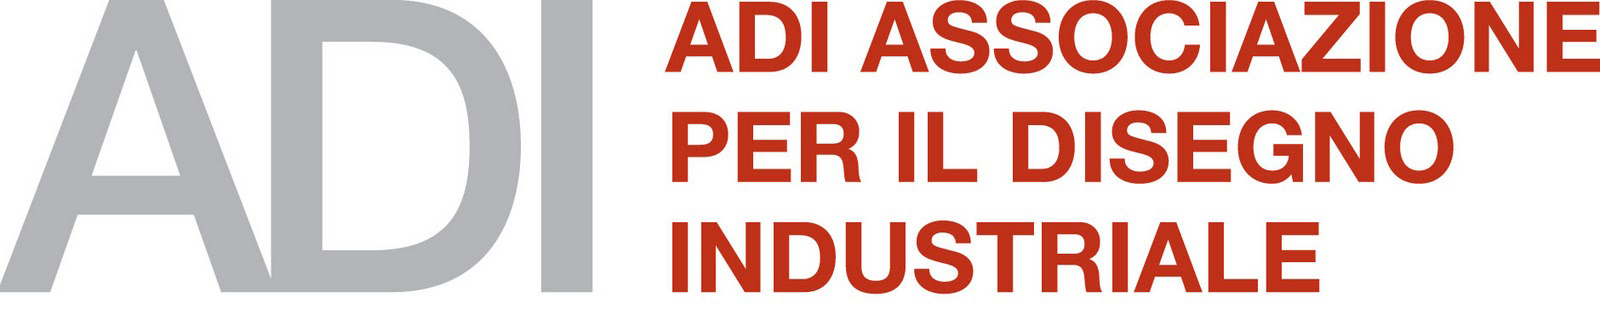 ADI - Associazione per il disegno industriale